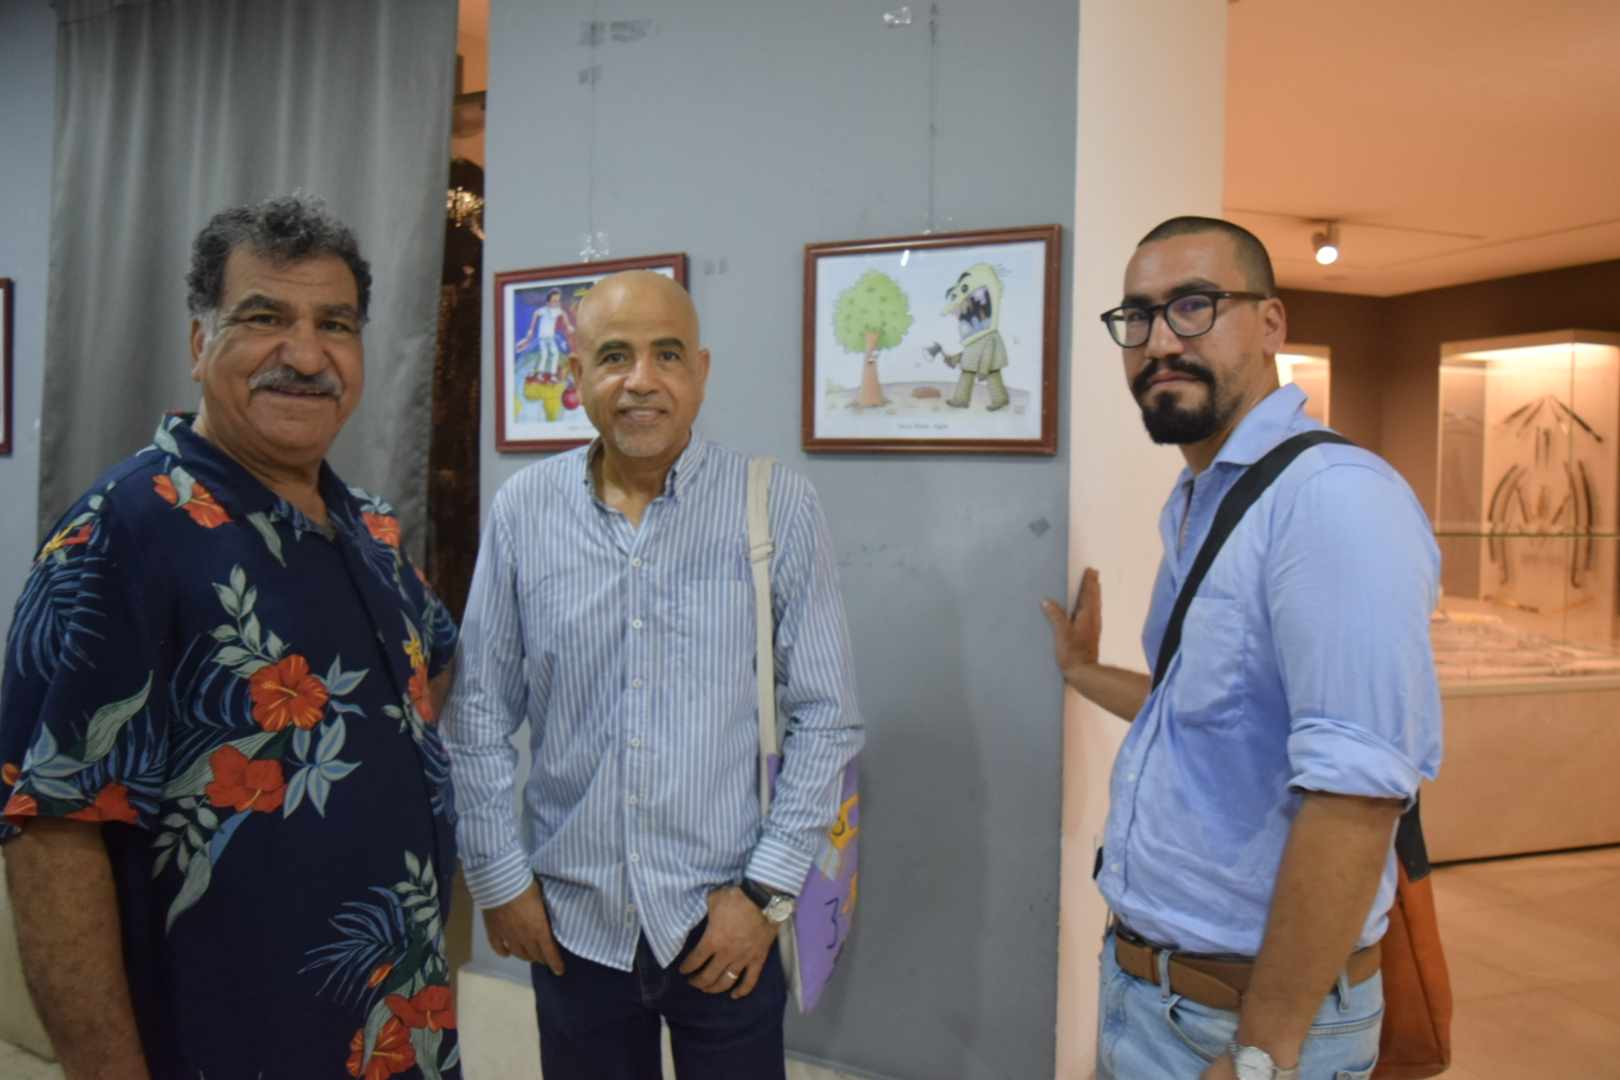 افتتاح معرض حياتنا بروح كاريكاتيرية "المناخ" في متحف الفن الإسلامي